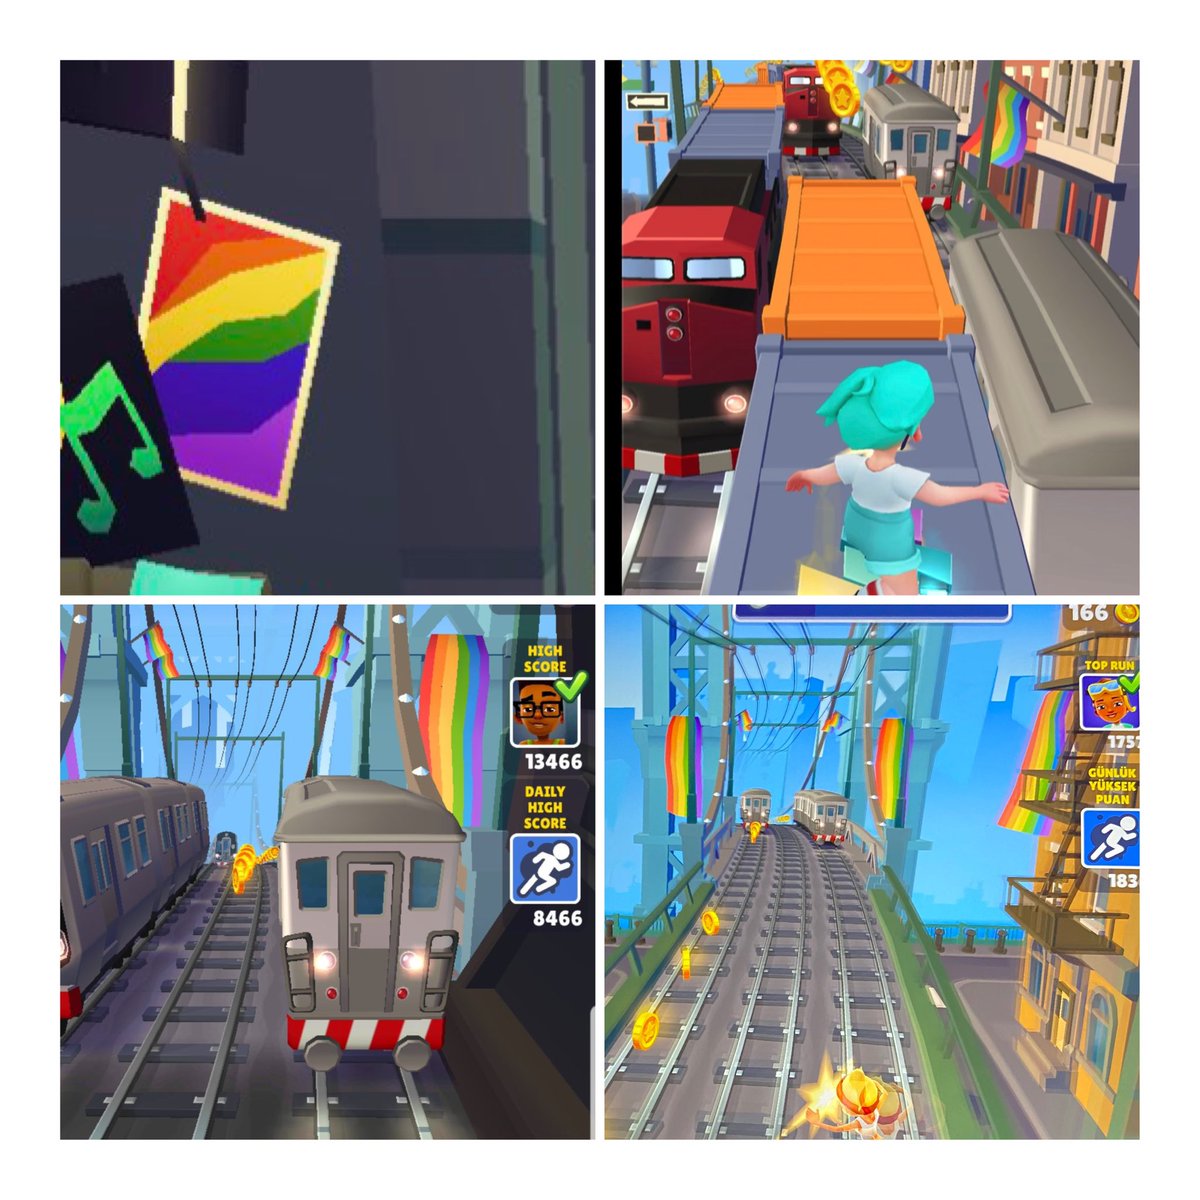 💢 Dünya'da Çocukların En Çok
Oynadığı Oyun Olan, Android ve
İPhone'da , 4.5 Milyar Kez indirilen (Dünya Nüfusu 7.9 Milyar)

Subway Surfers 'da Küresel
LGBT Dayatmasına Katıldı.
Eşcinsel Karakterler ve Objelere
Yoğun Bir Şekilde Yer Verilen Oyunu
En Çok İndiren Ülke ise Türkiye…